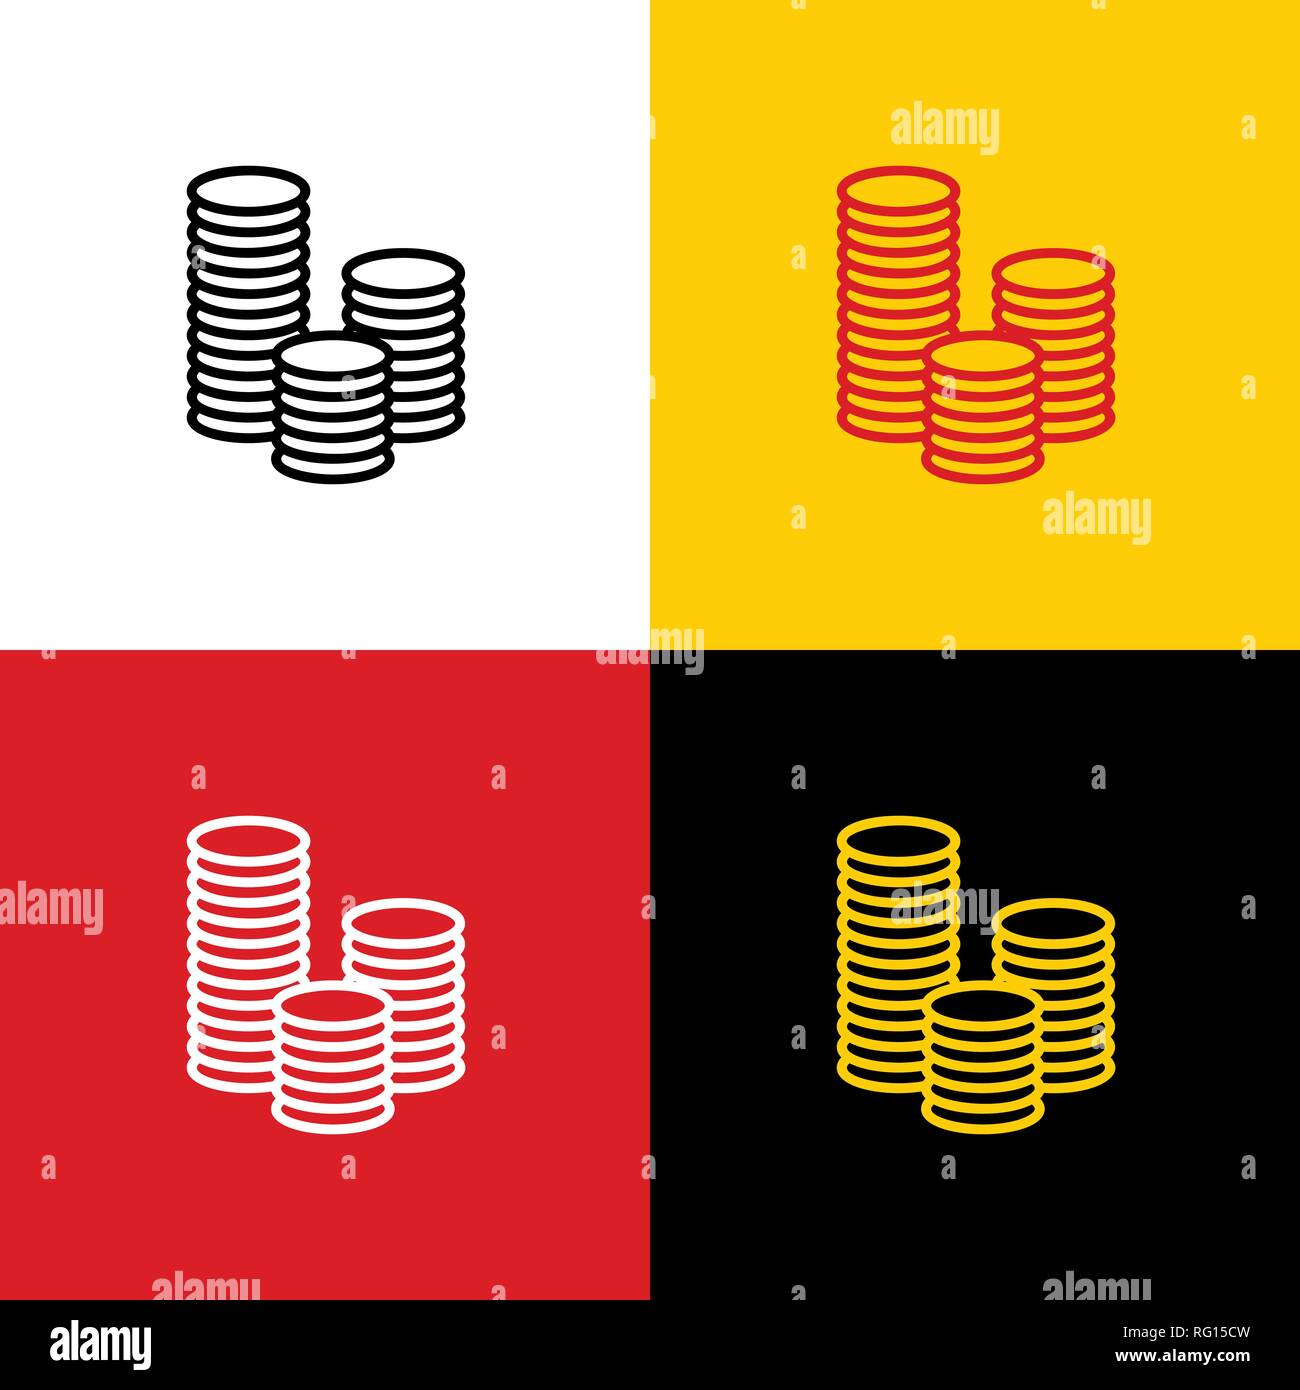 Geld zeichen Abbildung. Vektor. Symbole der deutschen Flagge auf entsprechenden Farben als Hintergrund. Stock Vektor